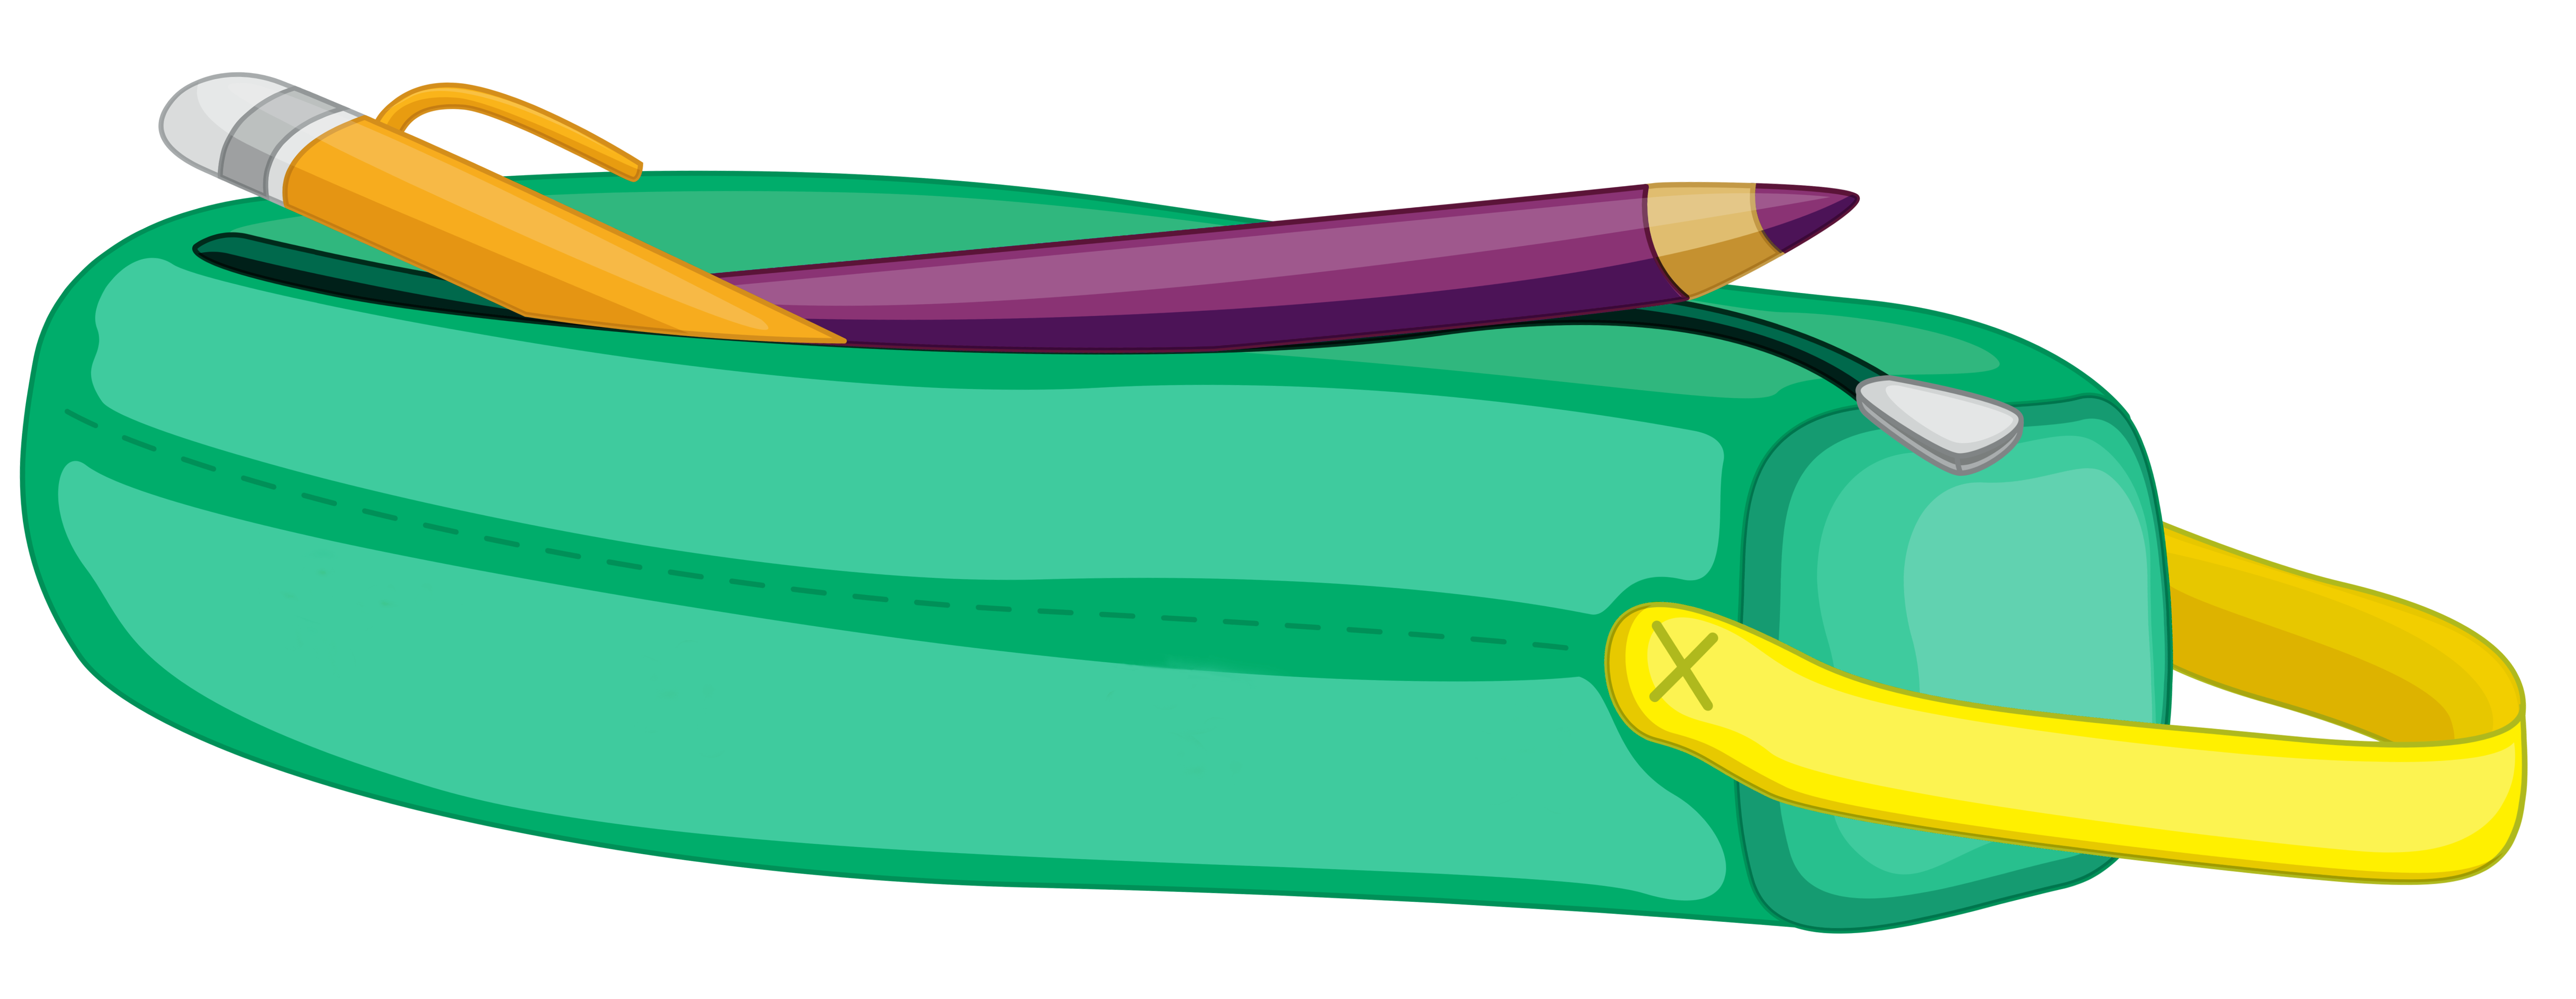 Bag at getdrawings com. Clipart school pencil